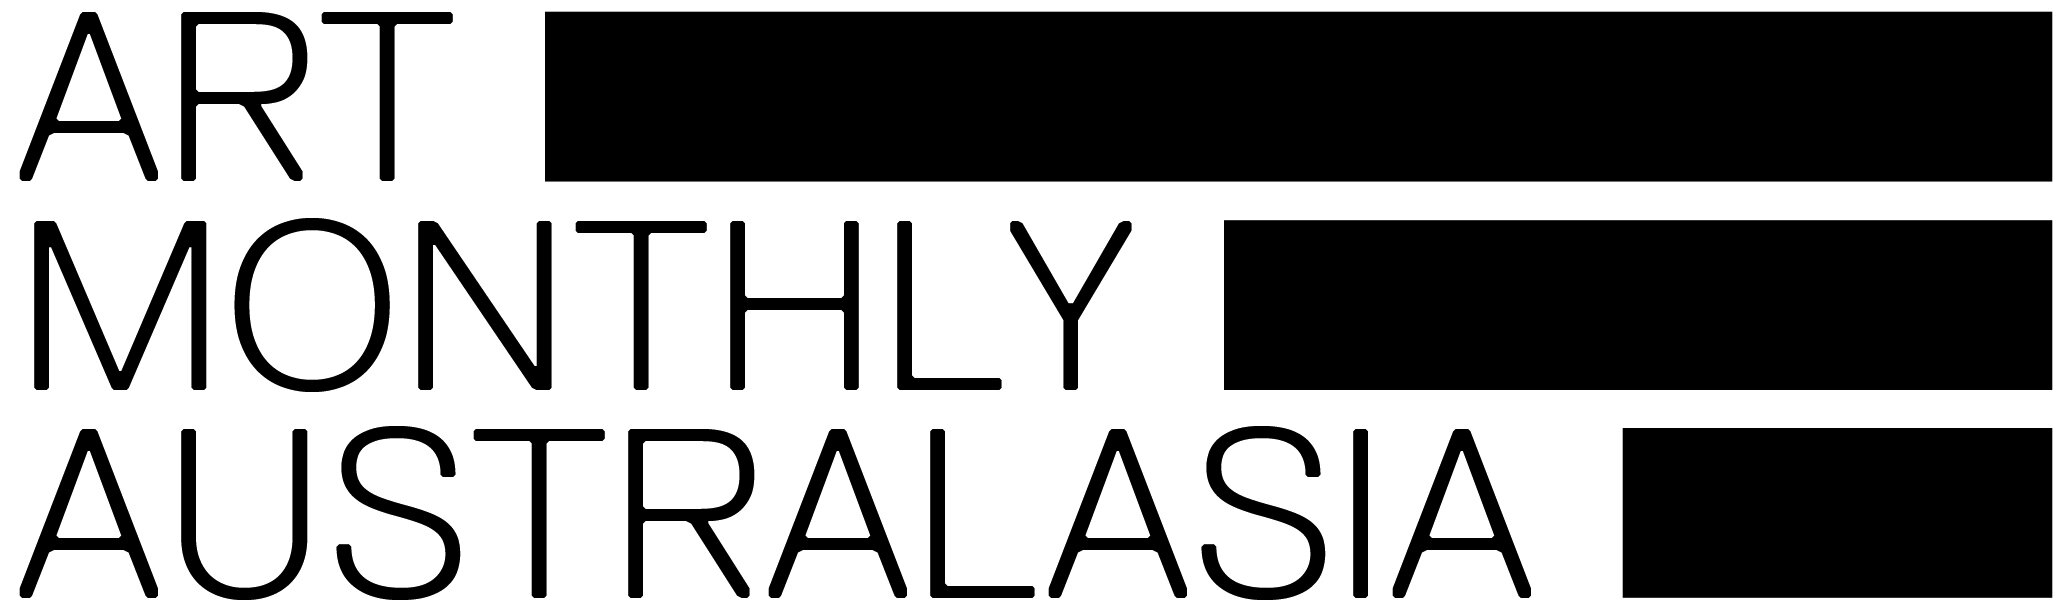 ART MONTHLY AUSTRALASIA_CMYK_logo.jpg